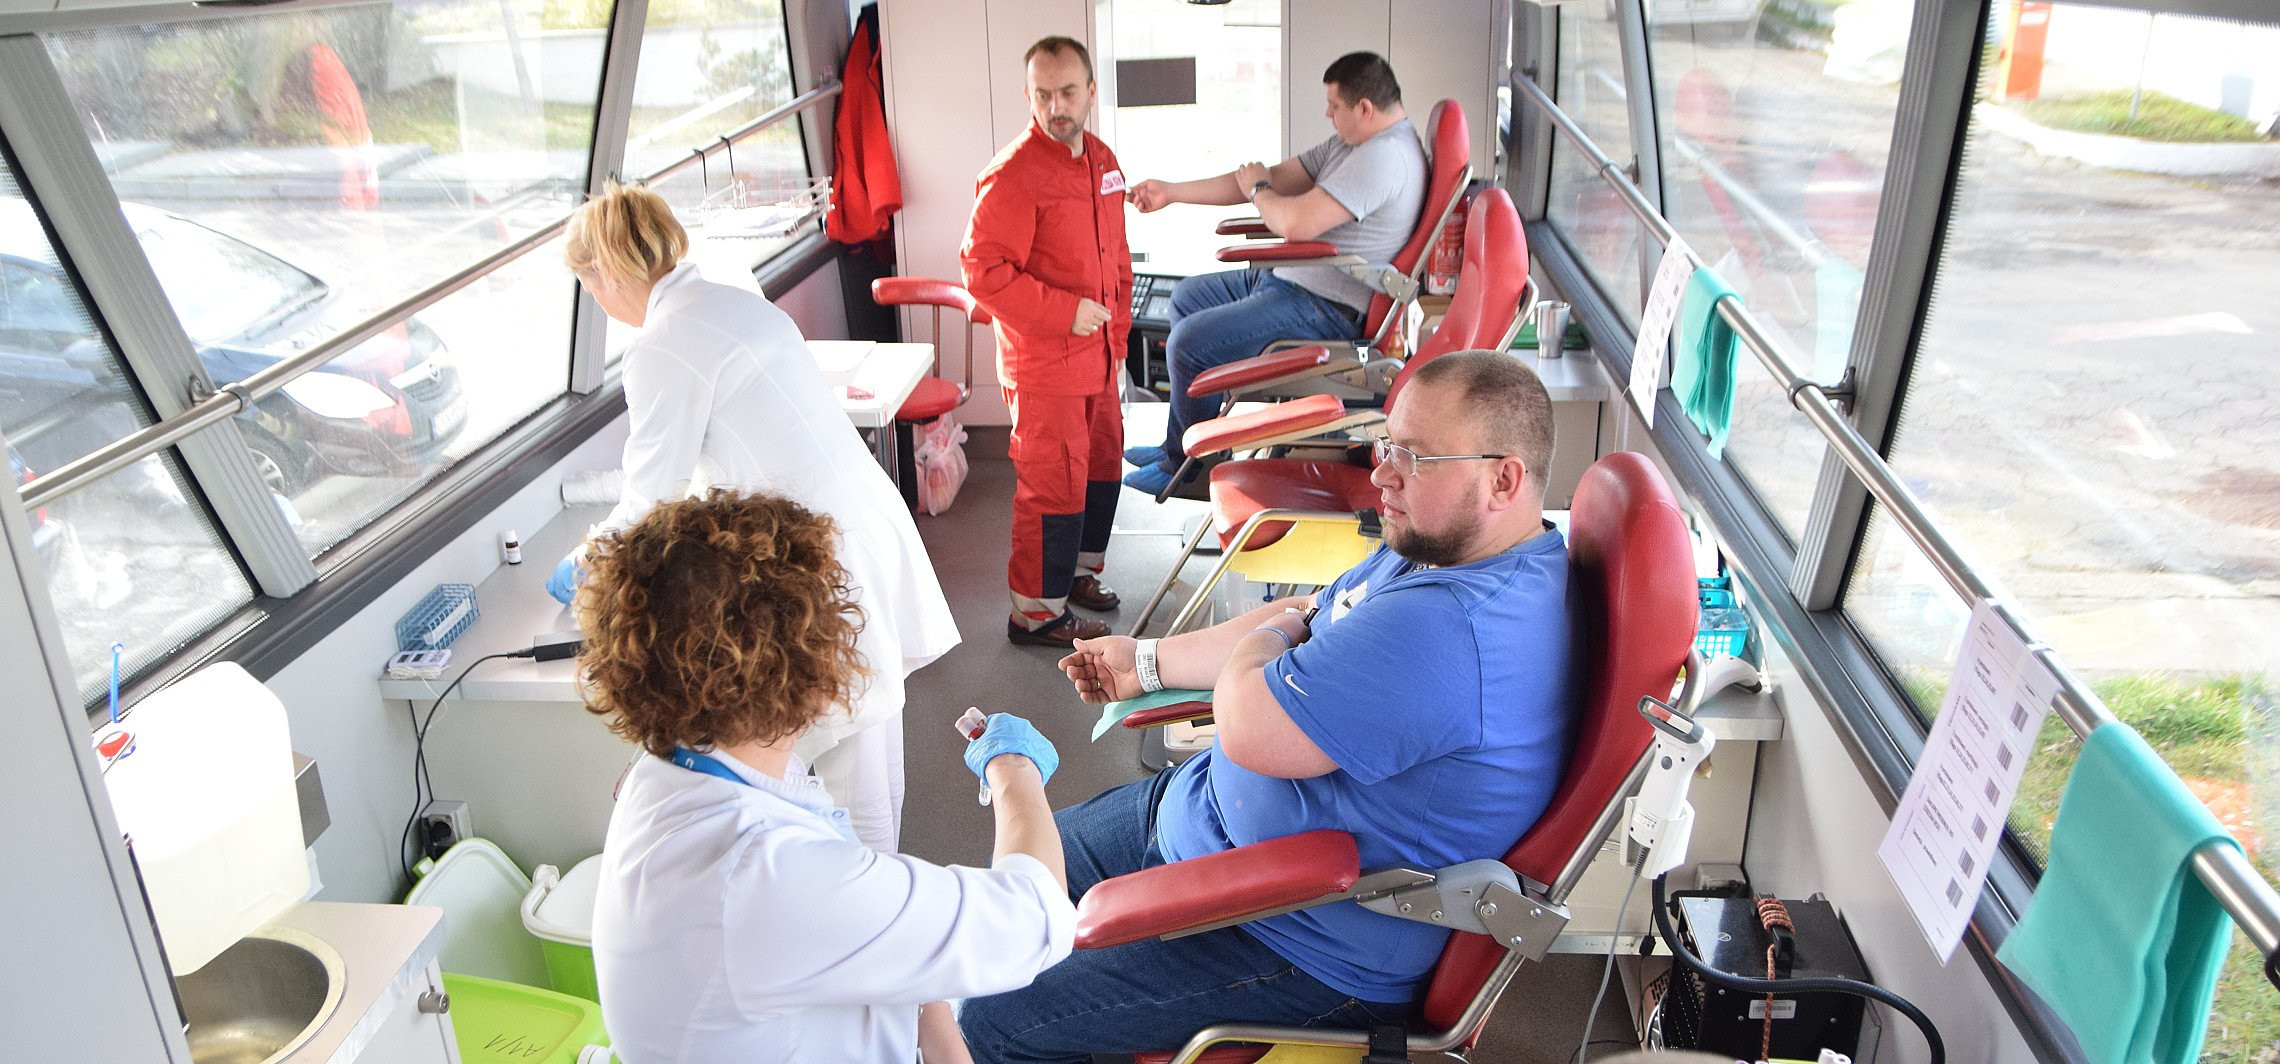 Inowrocław - Będzie okazja do oddania krwi